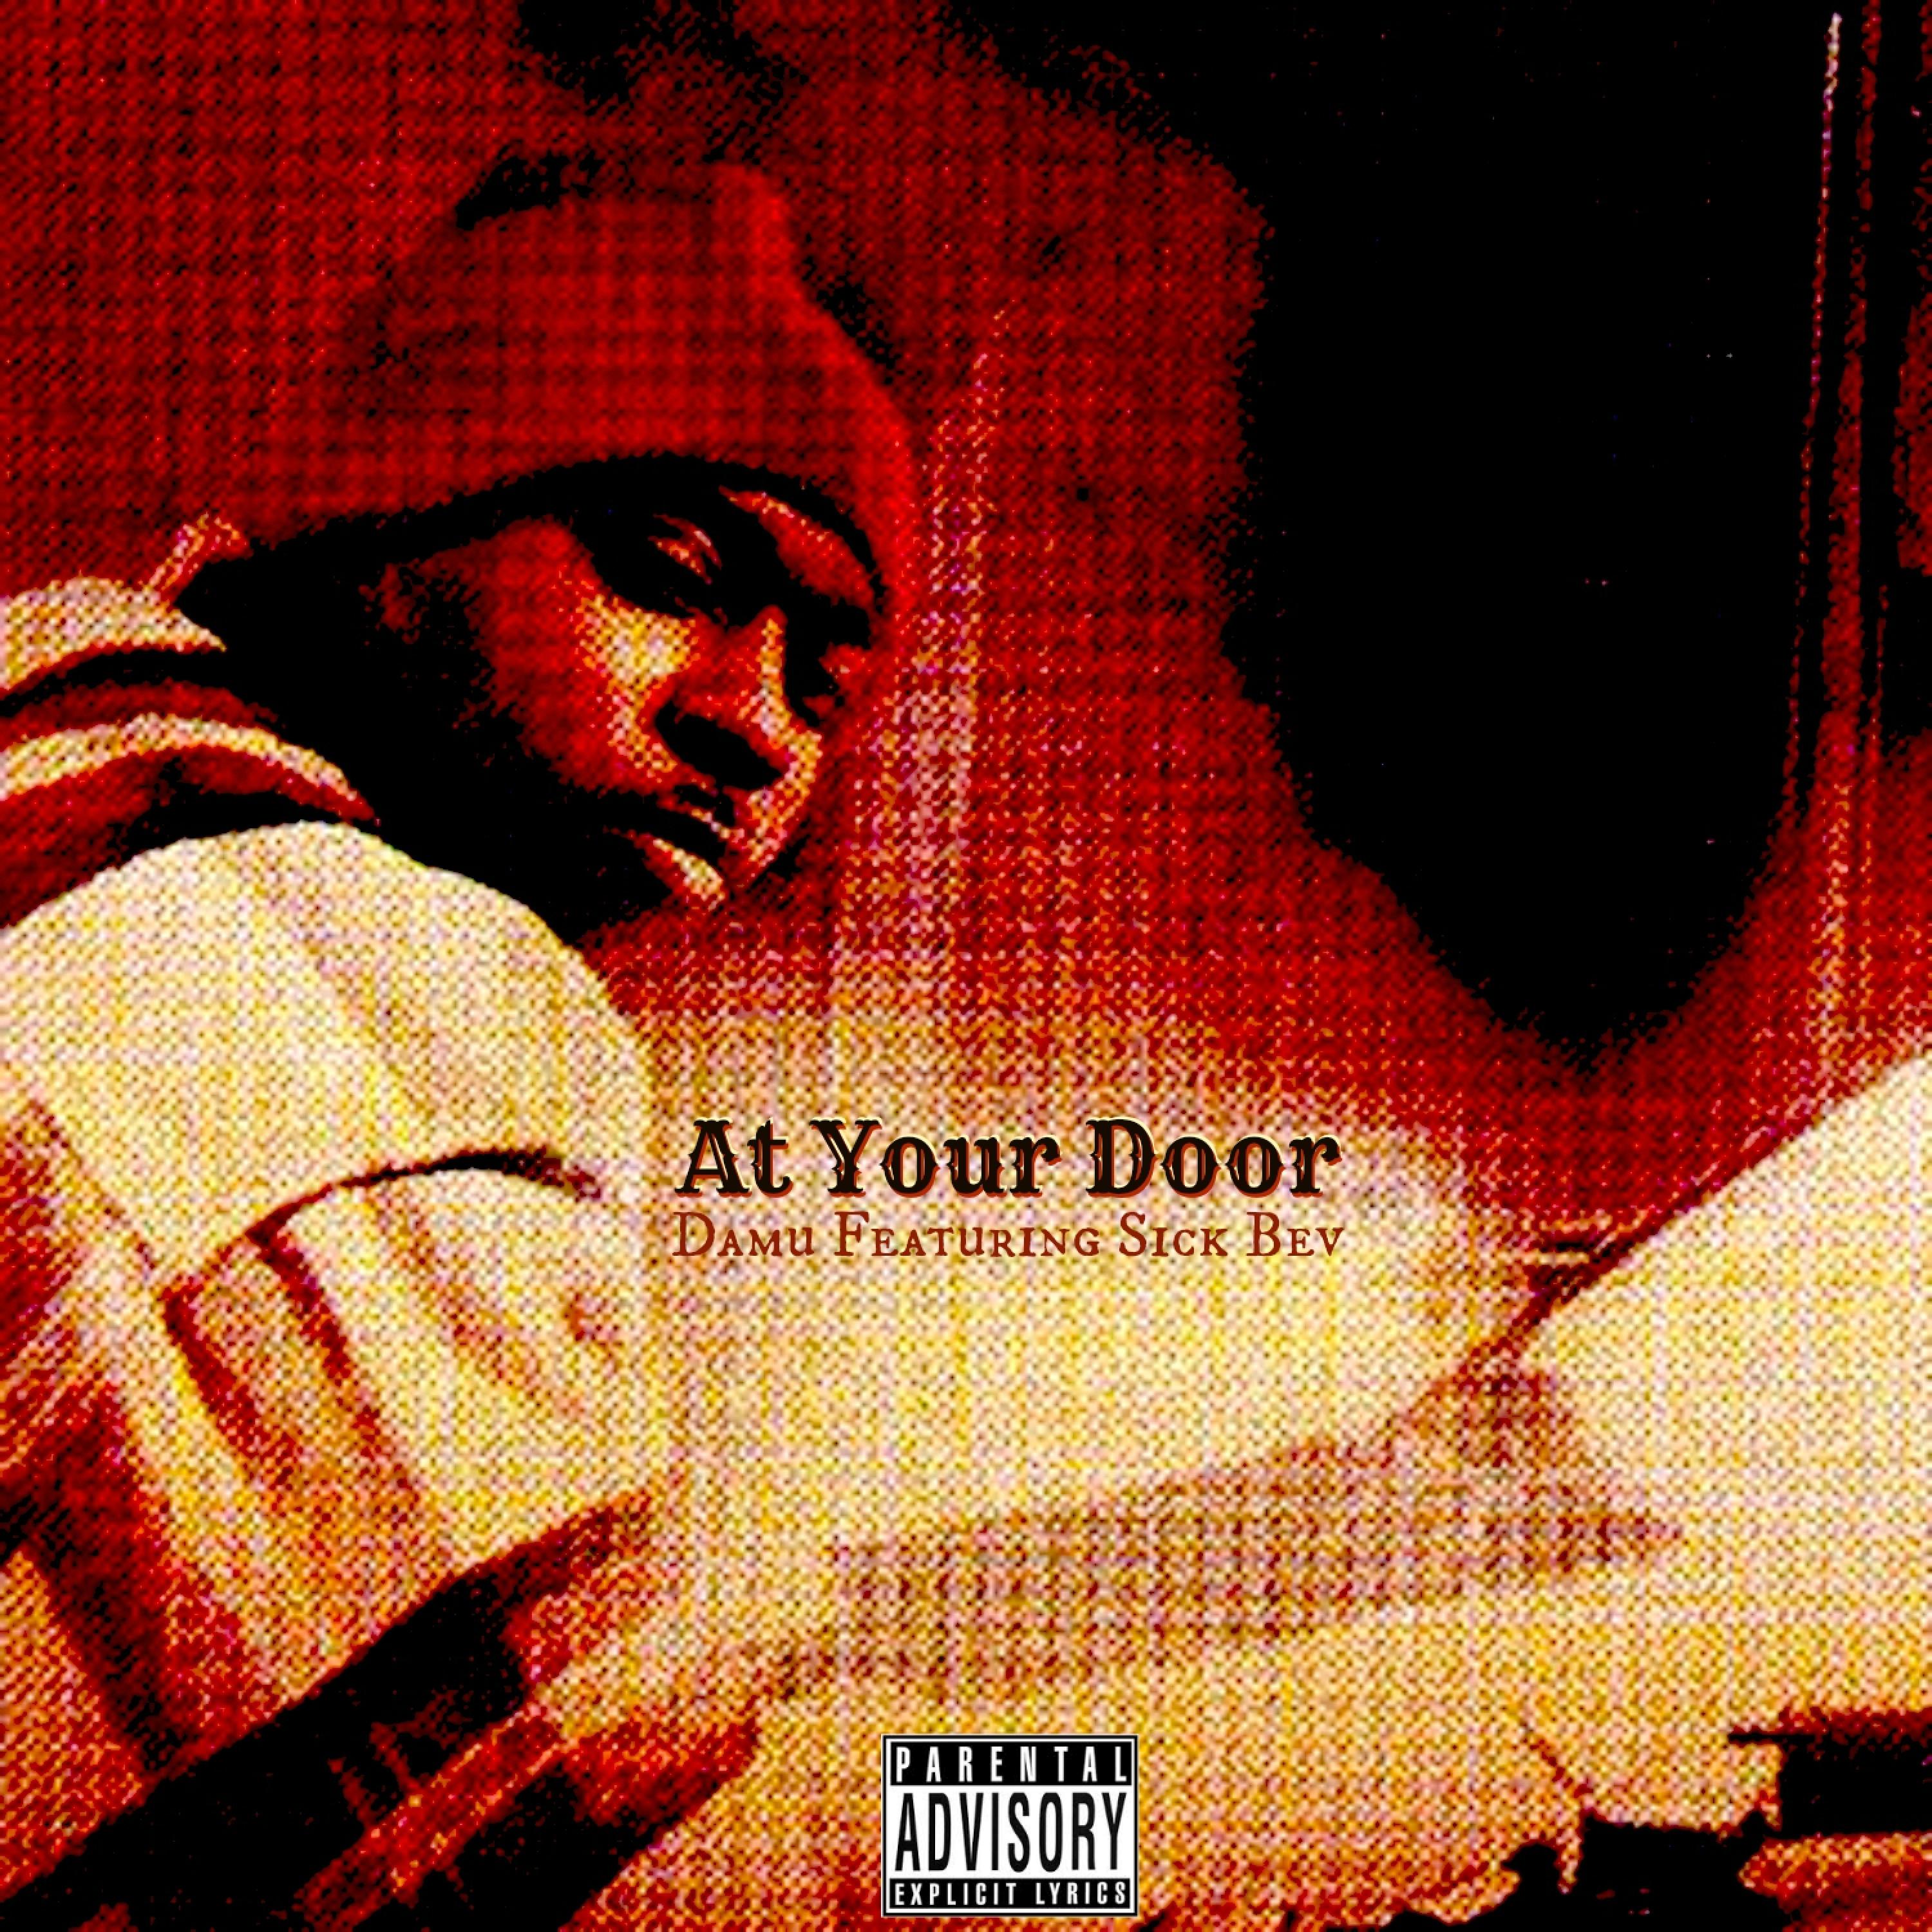 At Your Door